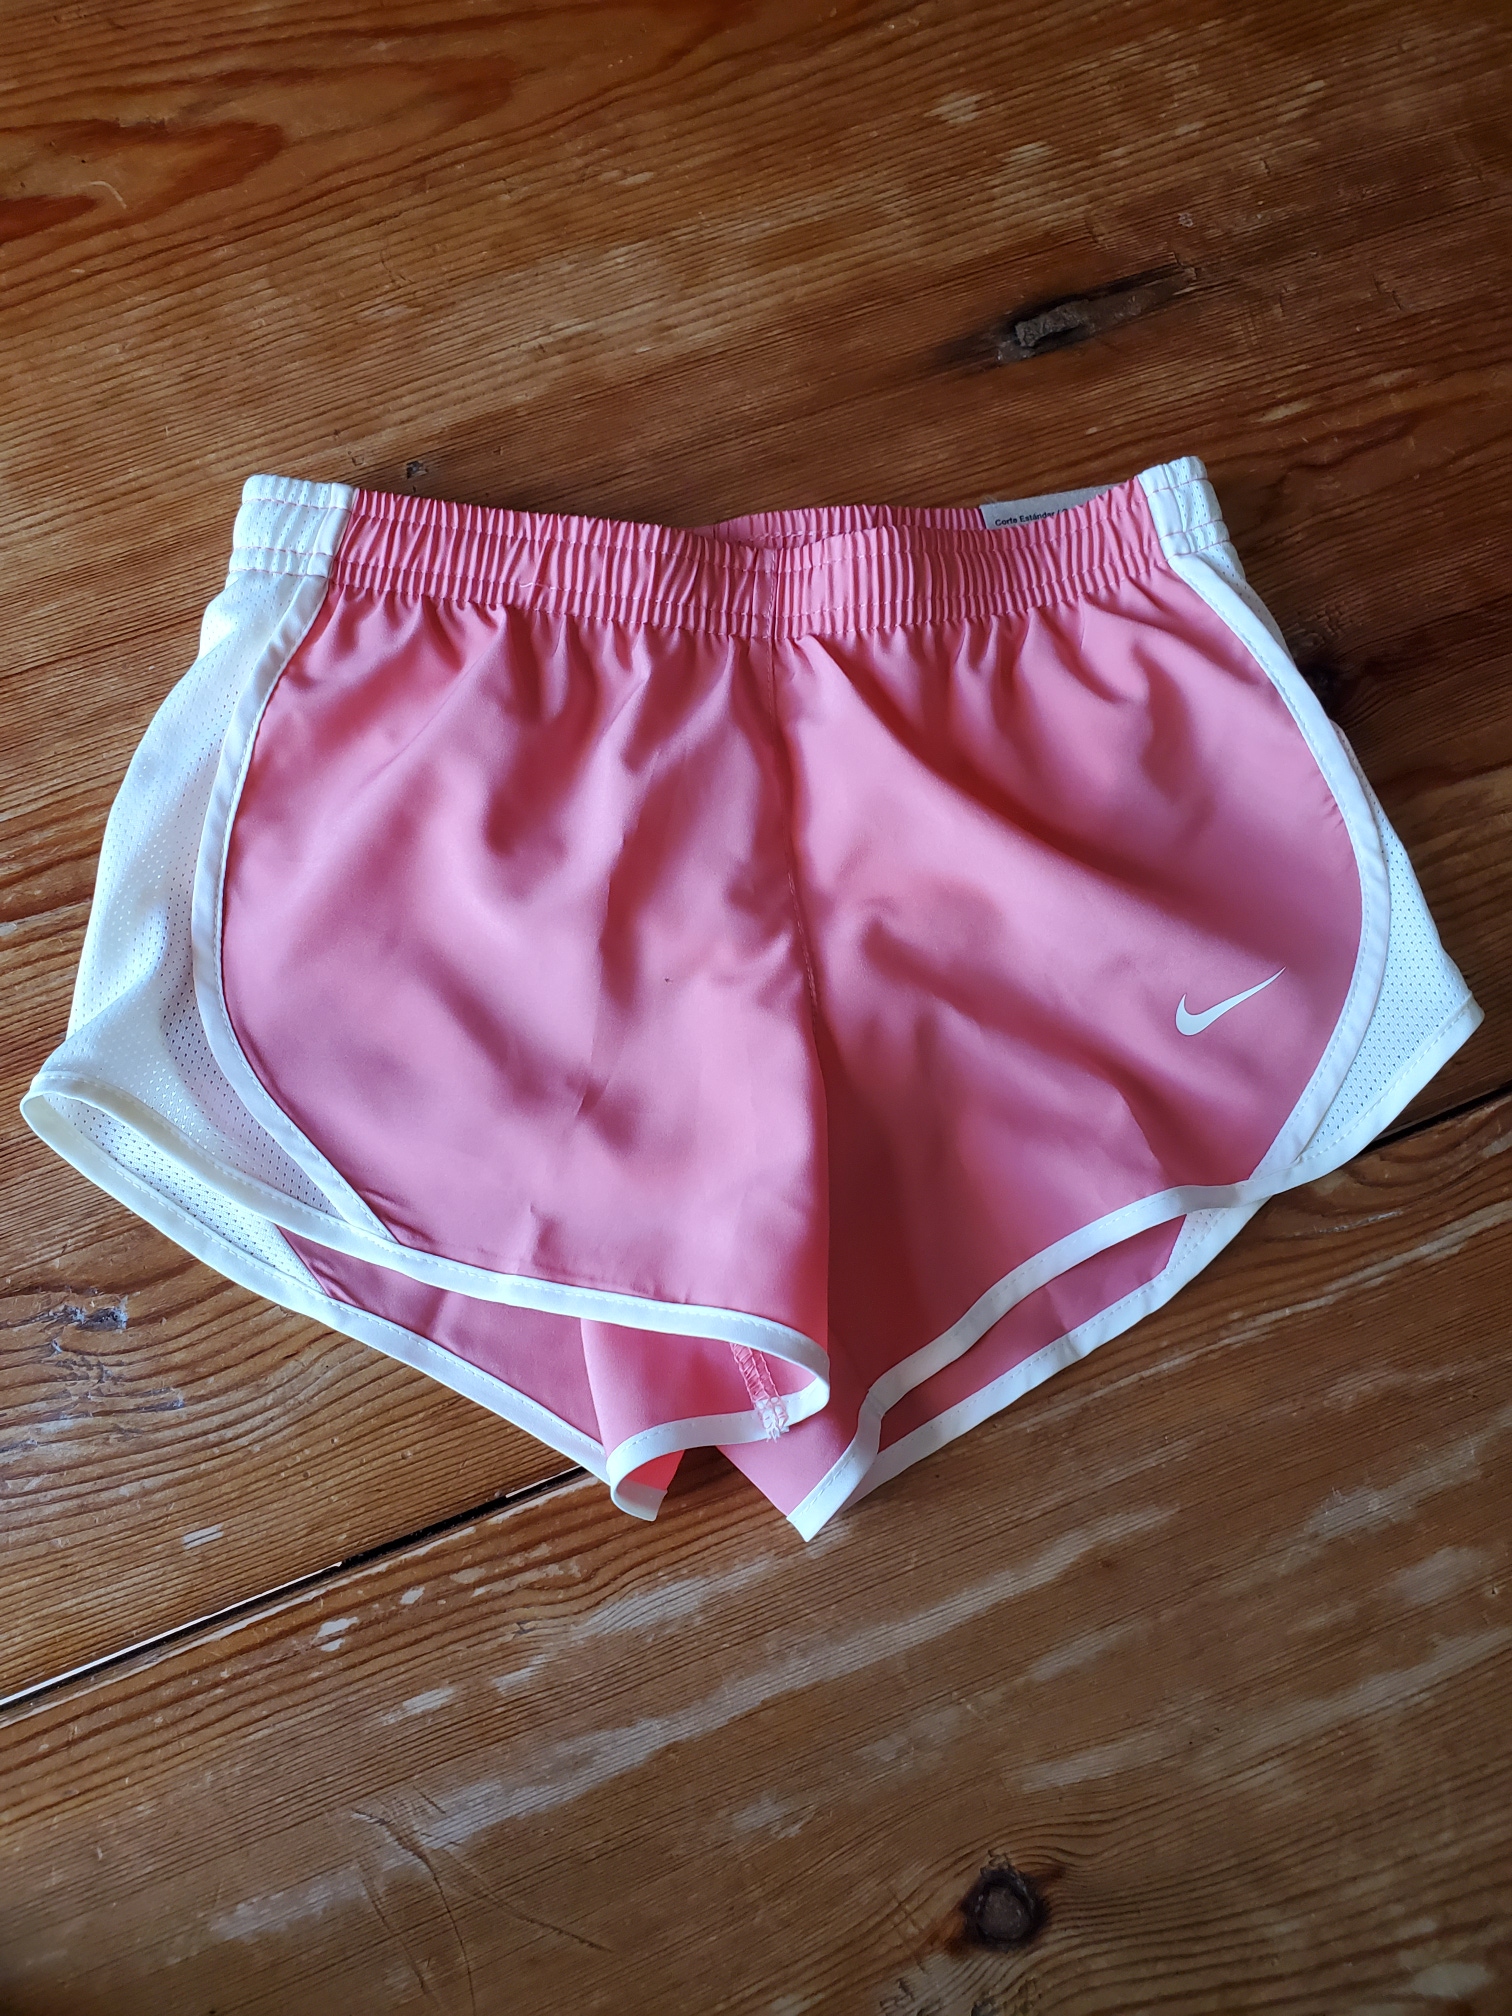 BNWT Girl's Nike running shorts